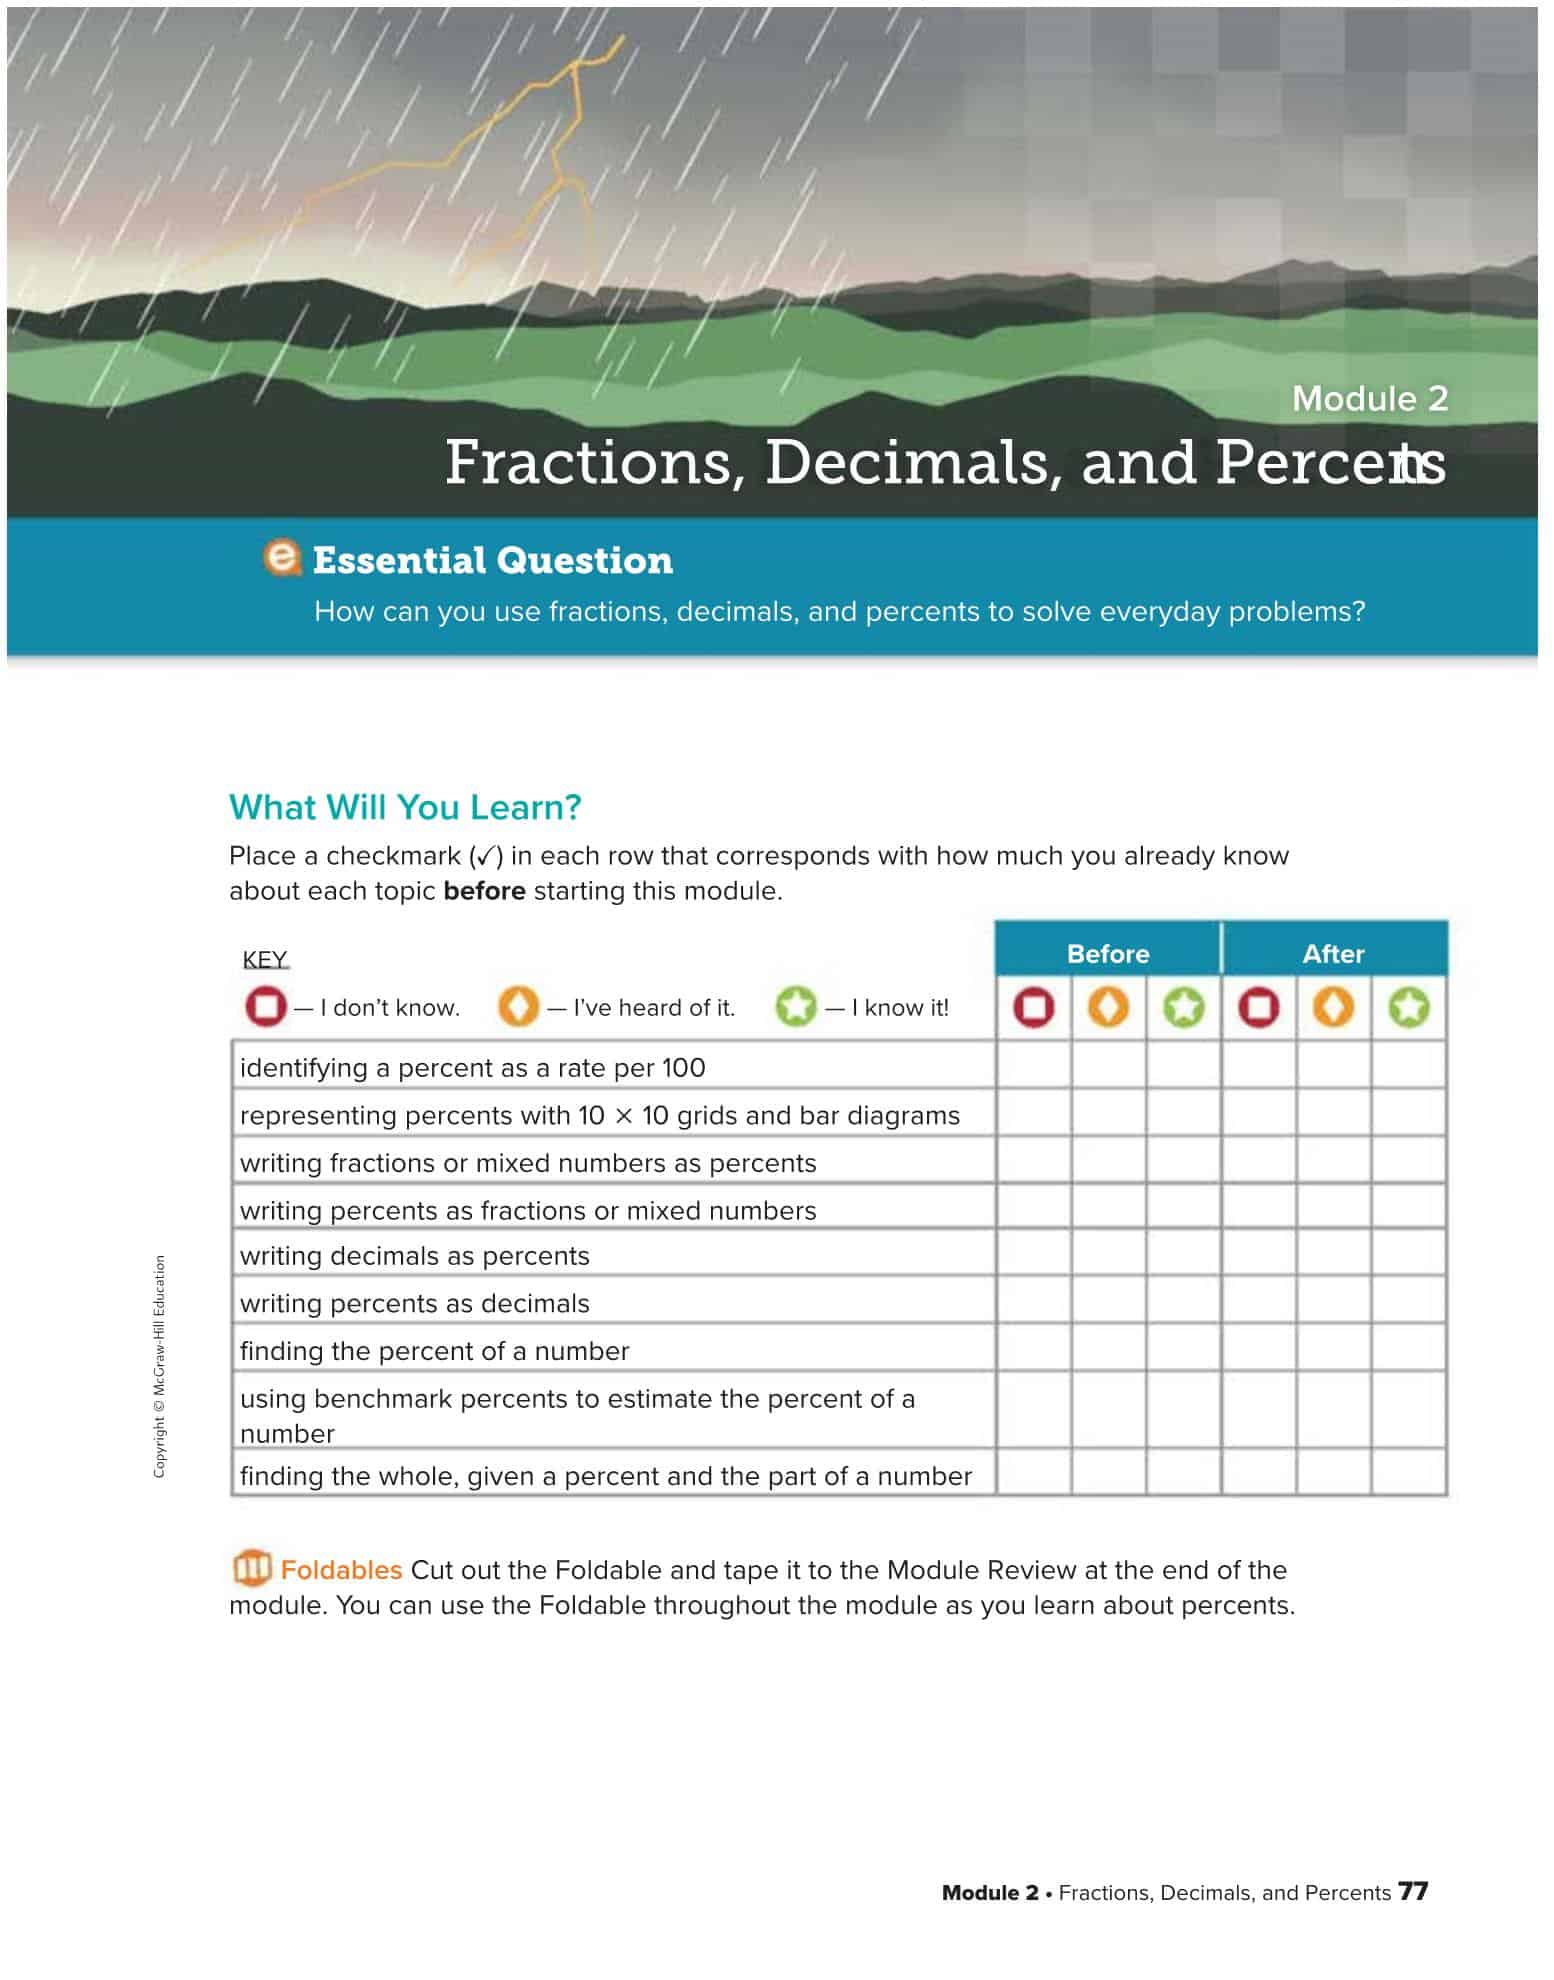 كتاب الطالب Module 2 Fractions-Decimals and Percents الرياضيات المتكاملة الصف السادس